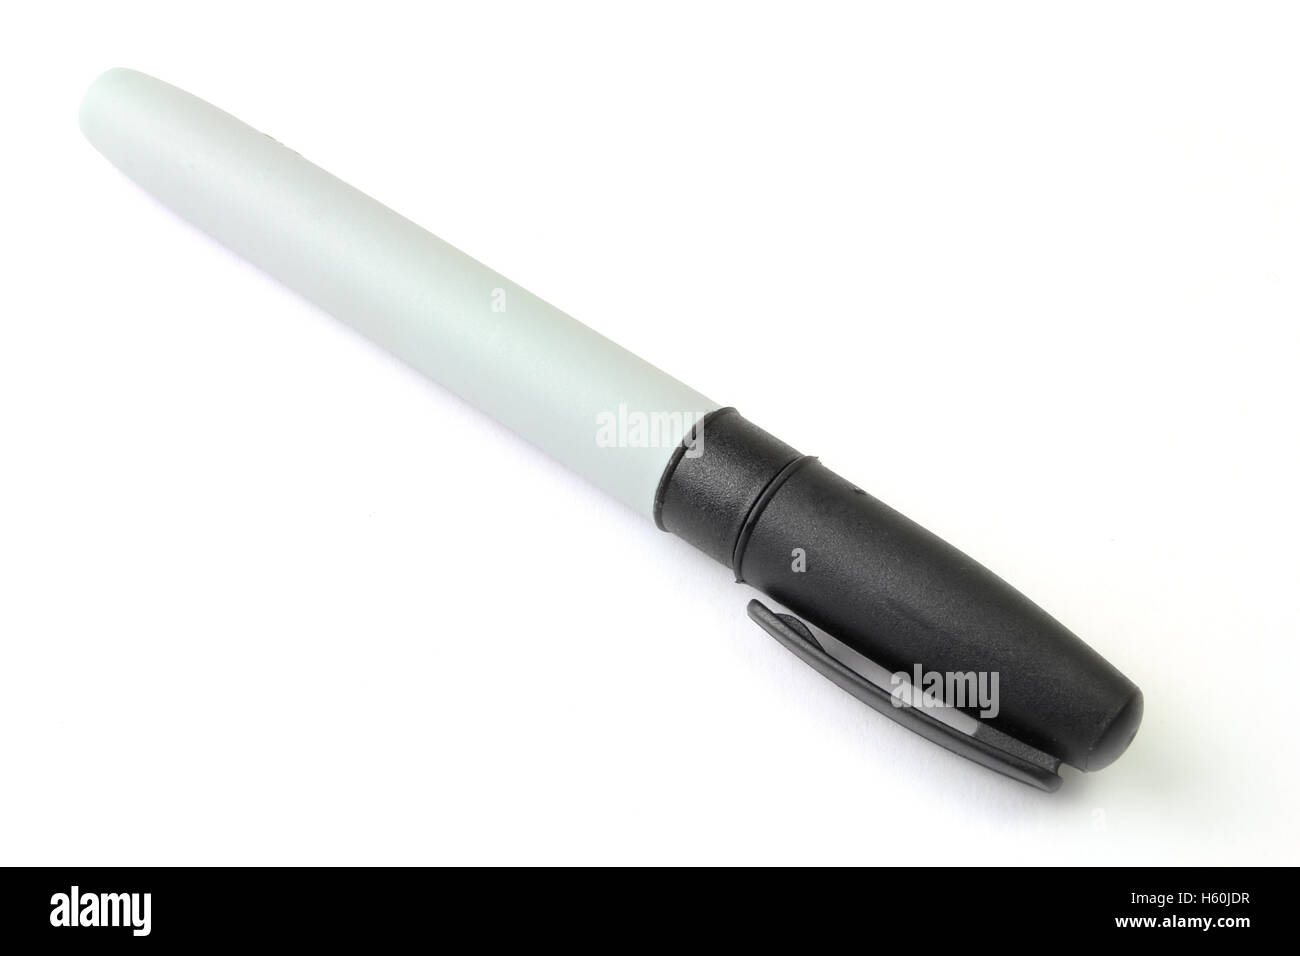 Black marker pen for flipchart or whiteboard Stock Photo